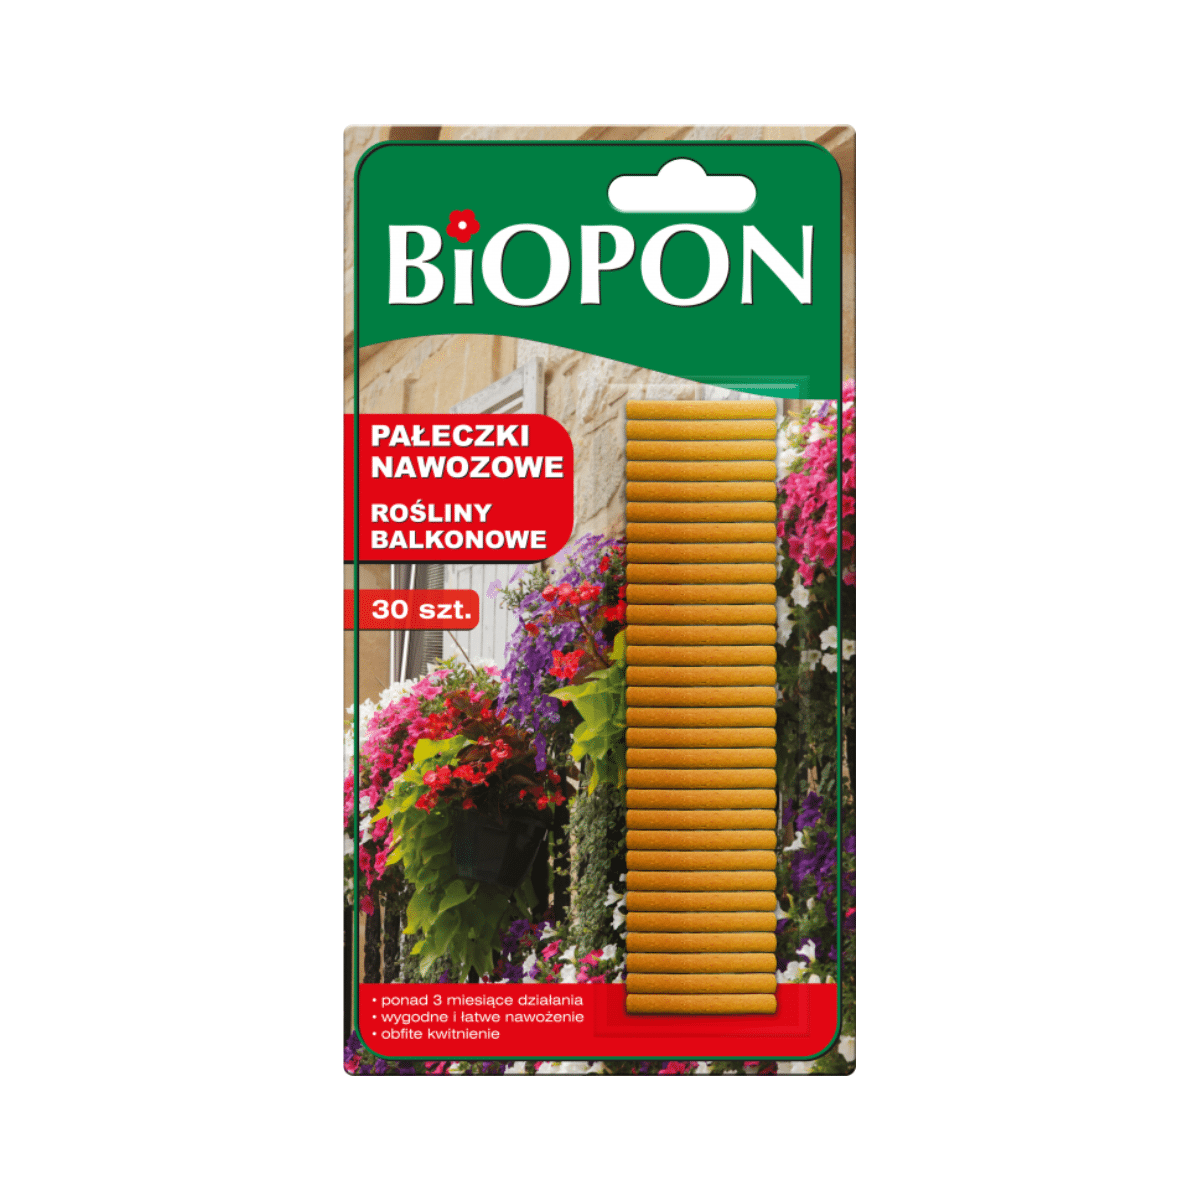 Pałeczki nawozowe do roślin balkonowych Biopon*